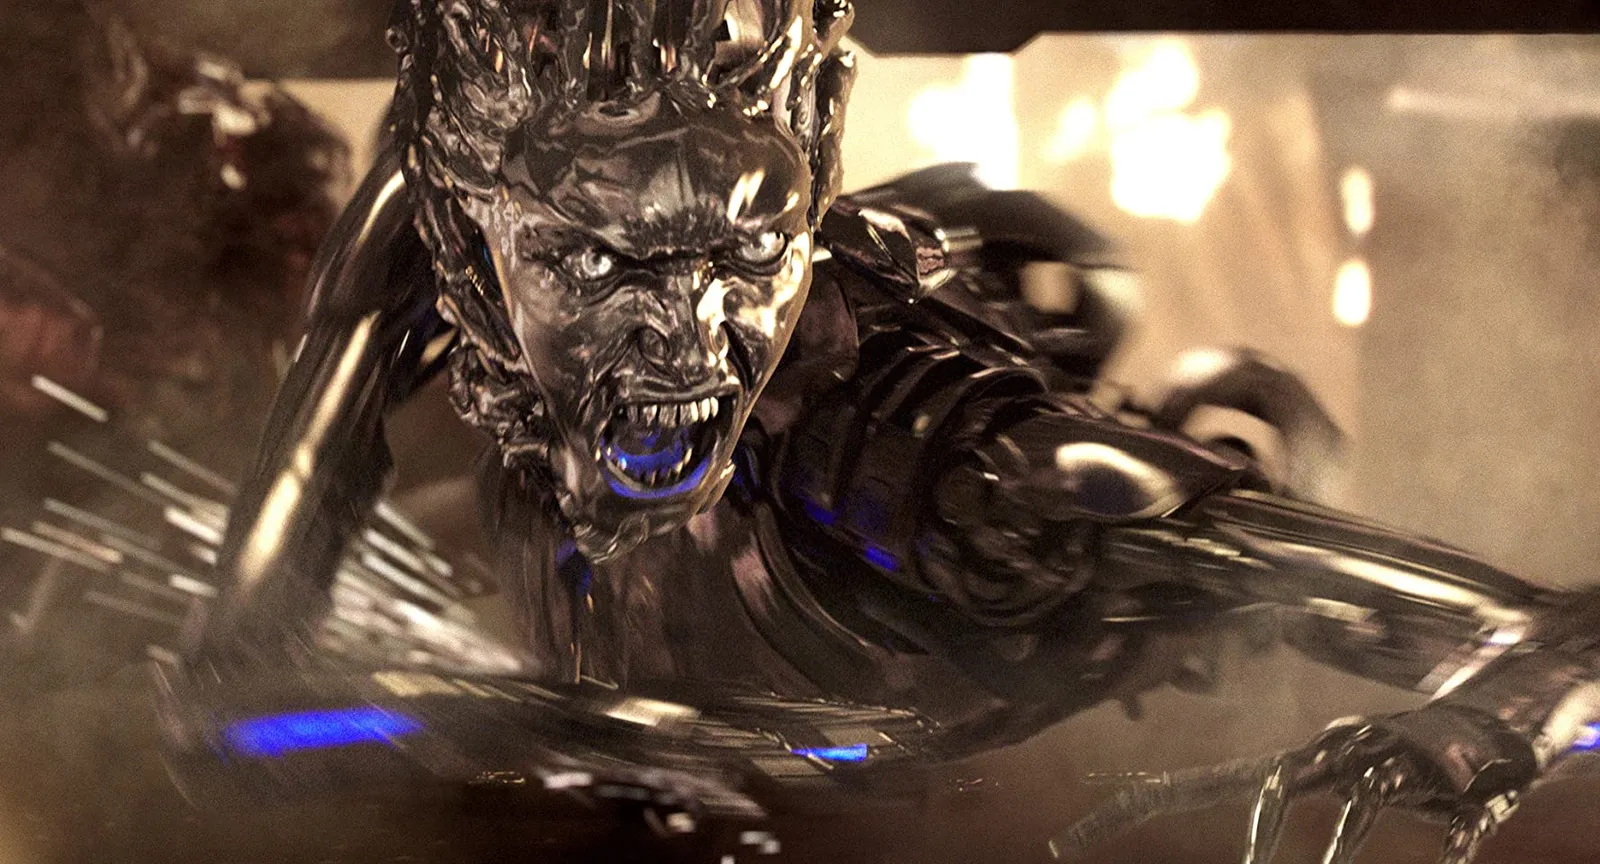 Pertarungan Seru Manusia dan Robot, Ini Sinopsis 'Terminator 3'